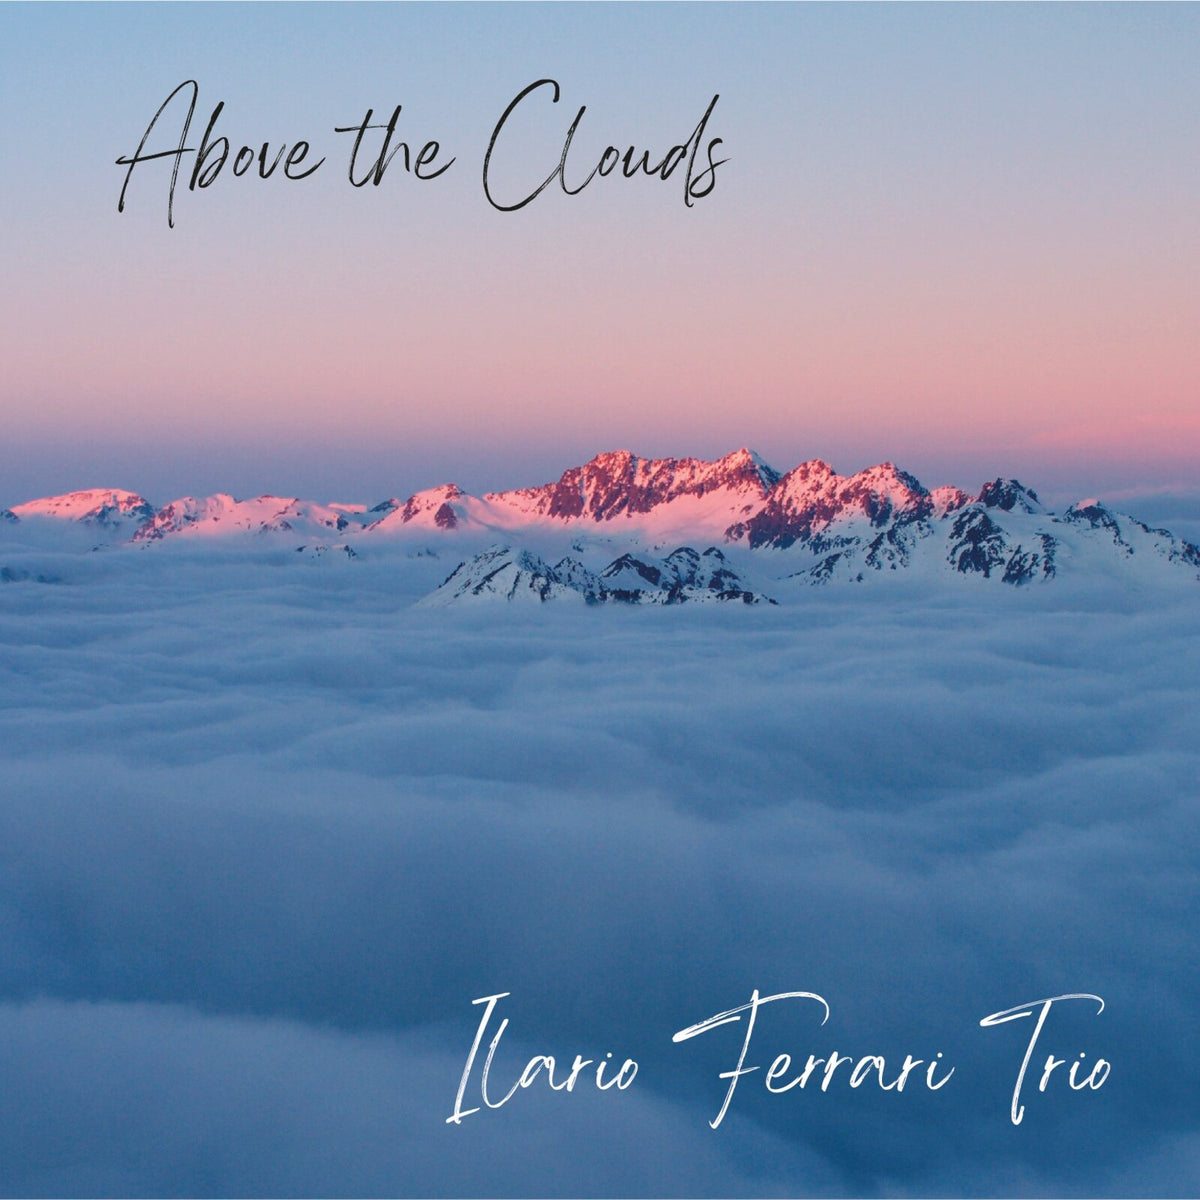 Ilario Ferrari Trio - Above The Clouds - EM11